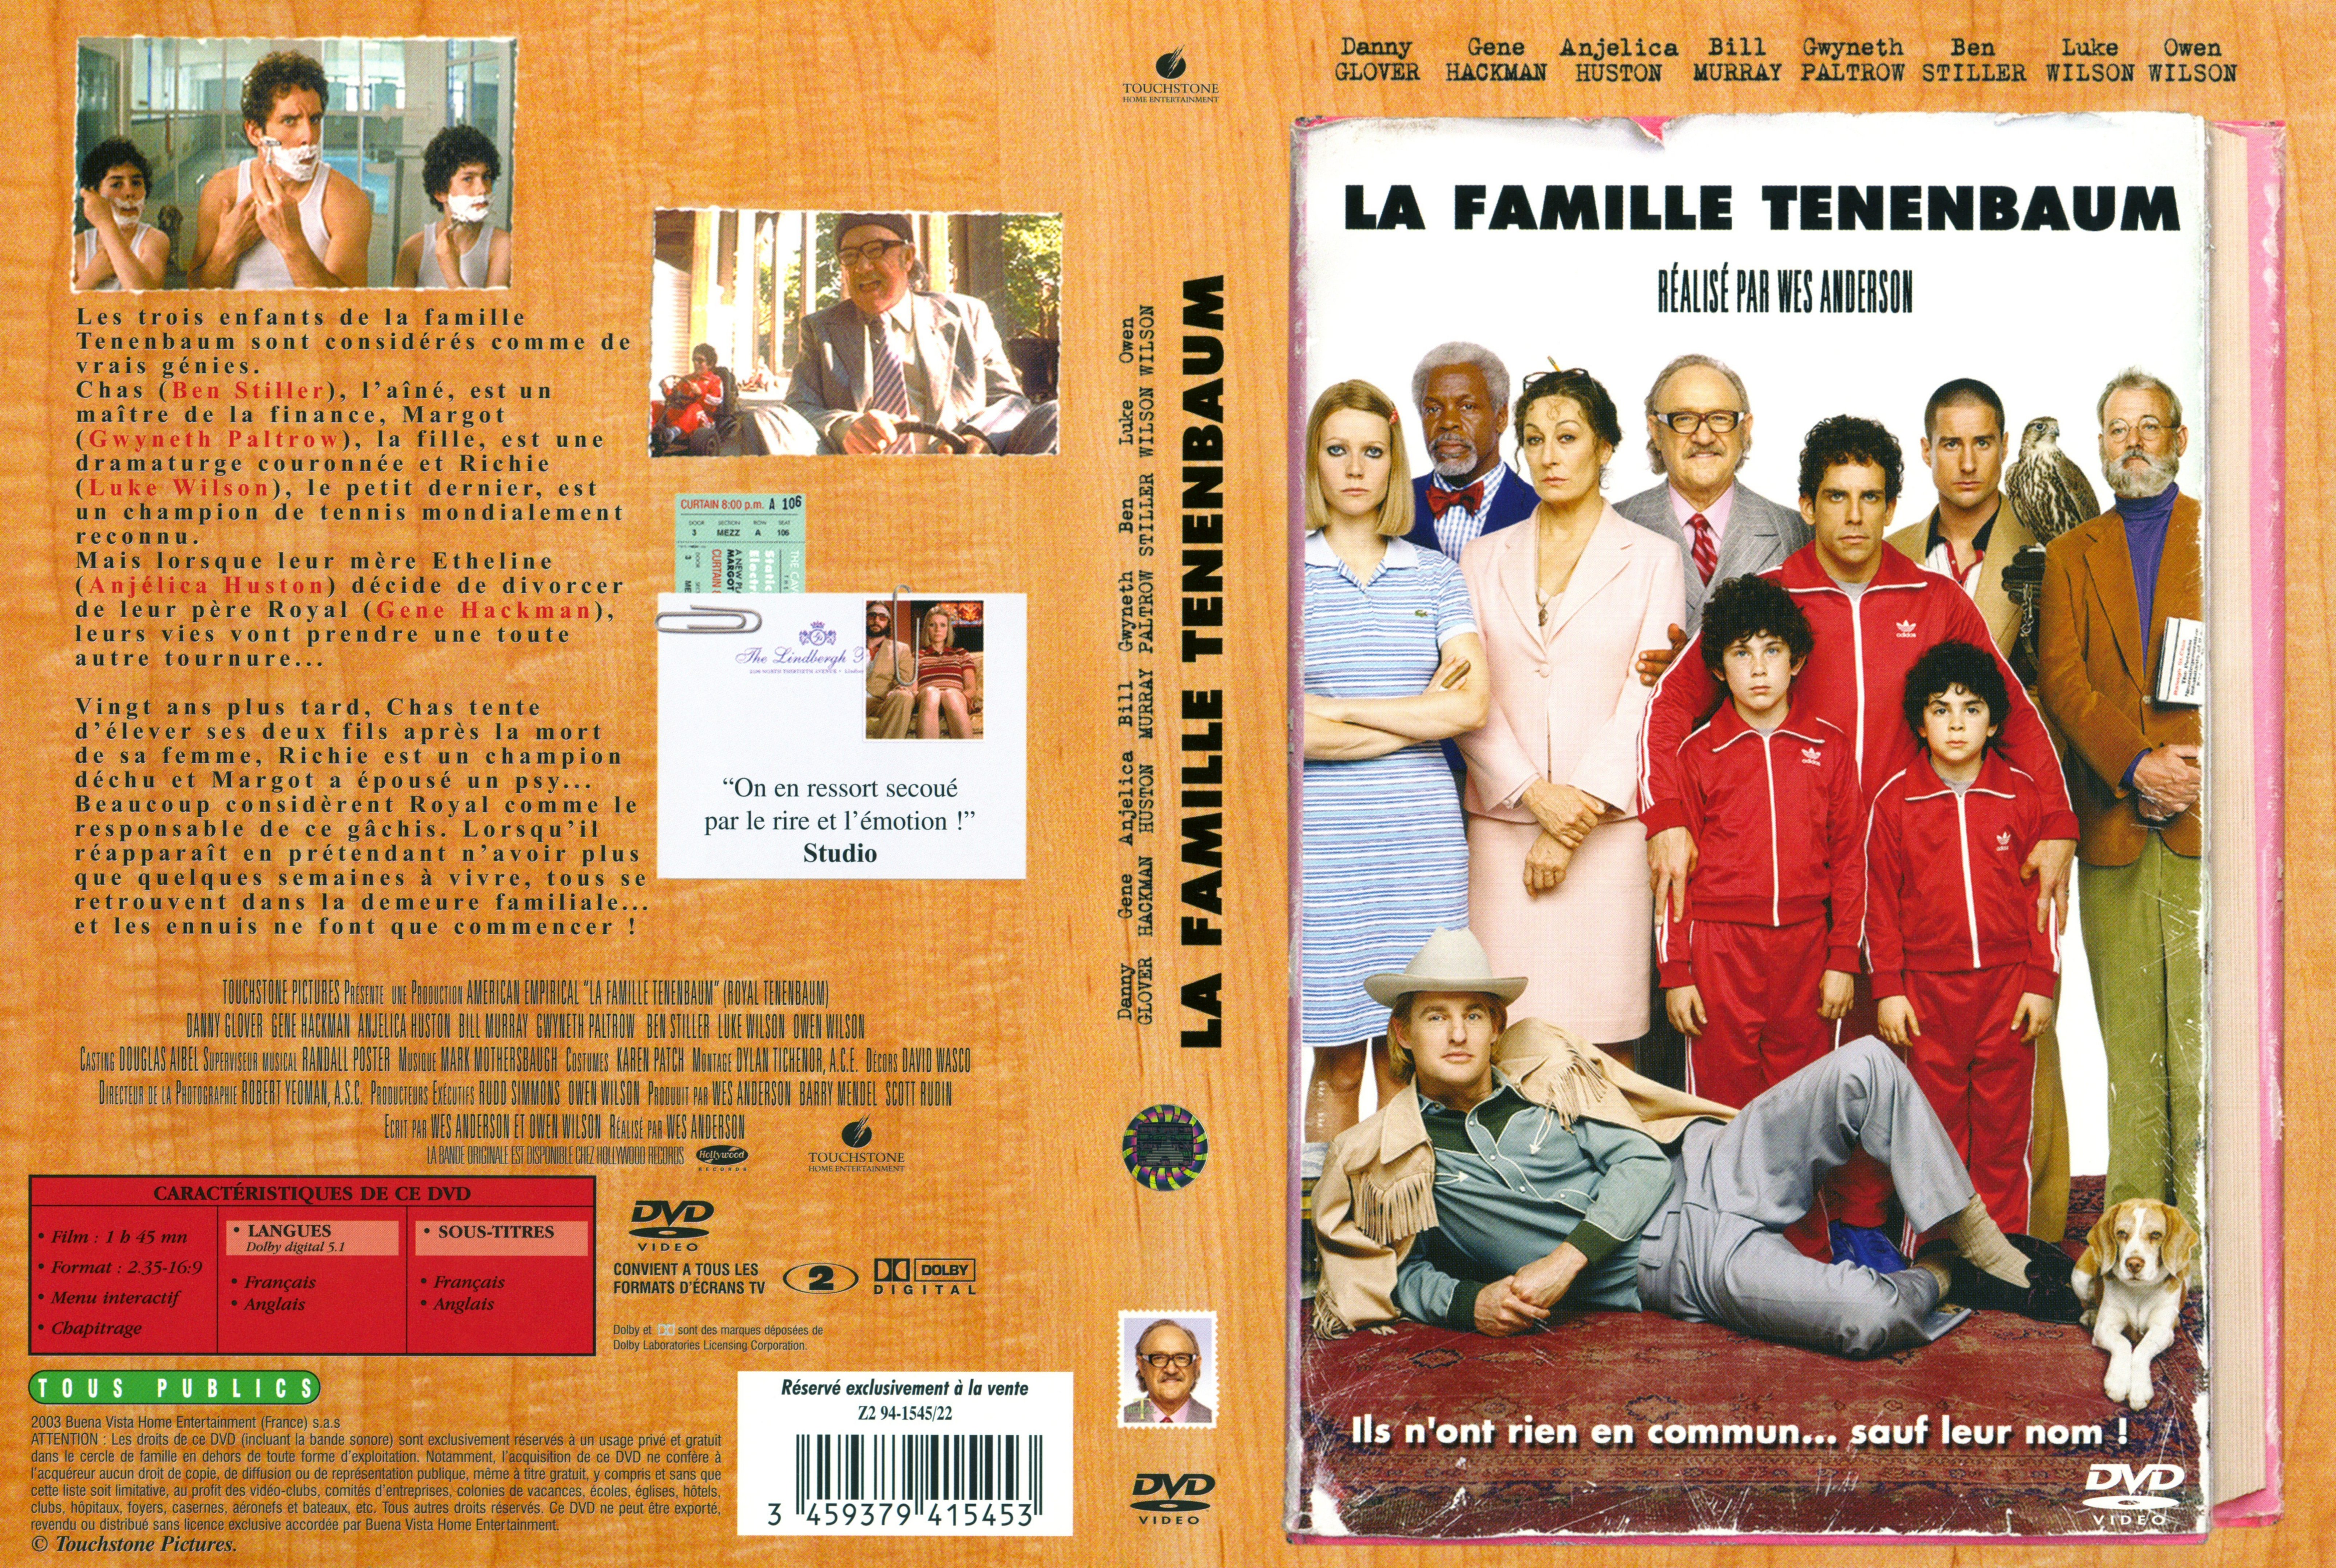 Jaquette DVD La famille Tenenbaum